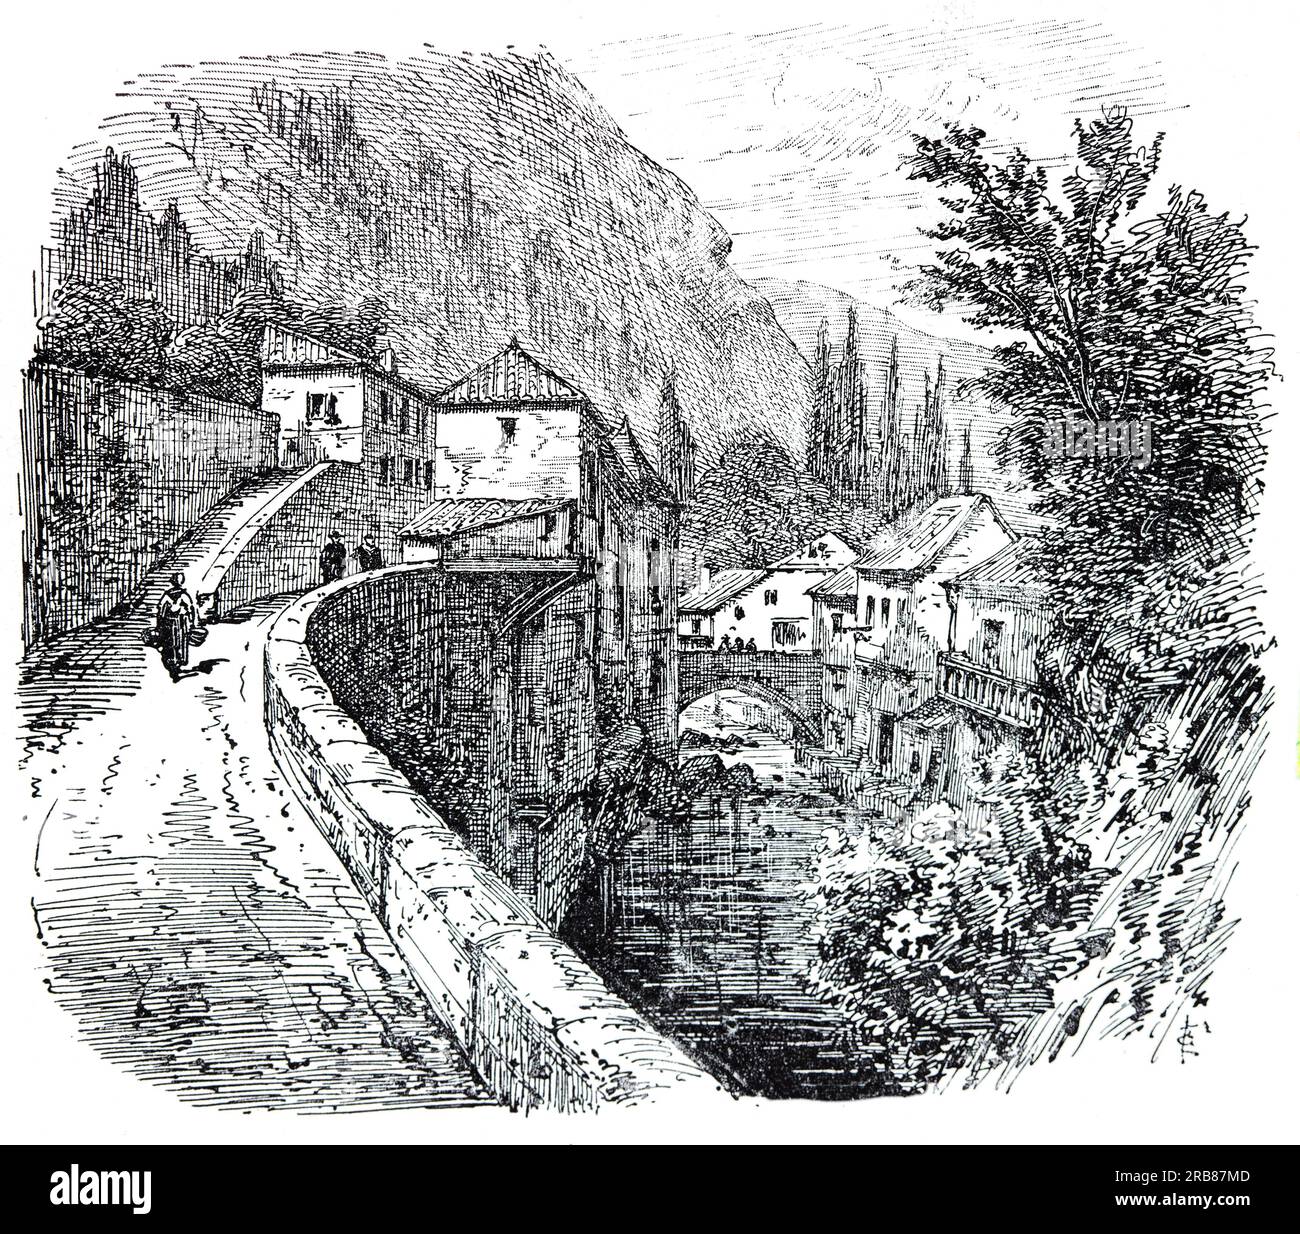 Une illustration du début du 19e siècle de la rivière Ourse qui traverse Mauléon-Barousse dans le département des Hautes-Pyrénées dans le sud-ouest de la France. Banque D'Images